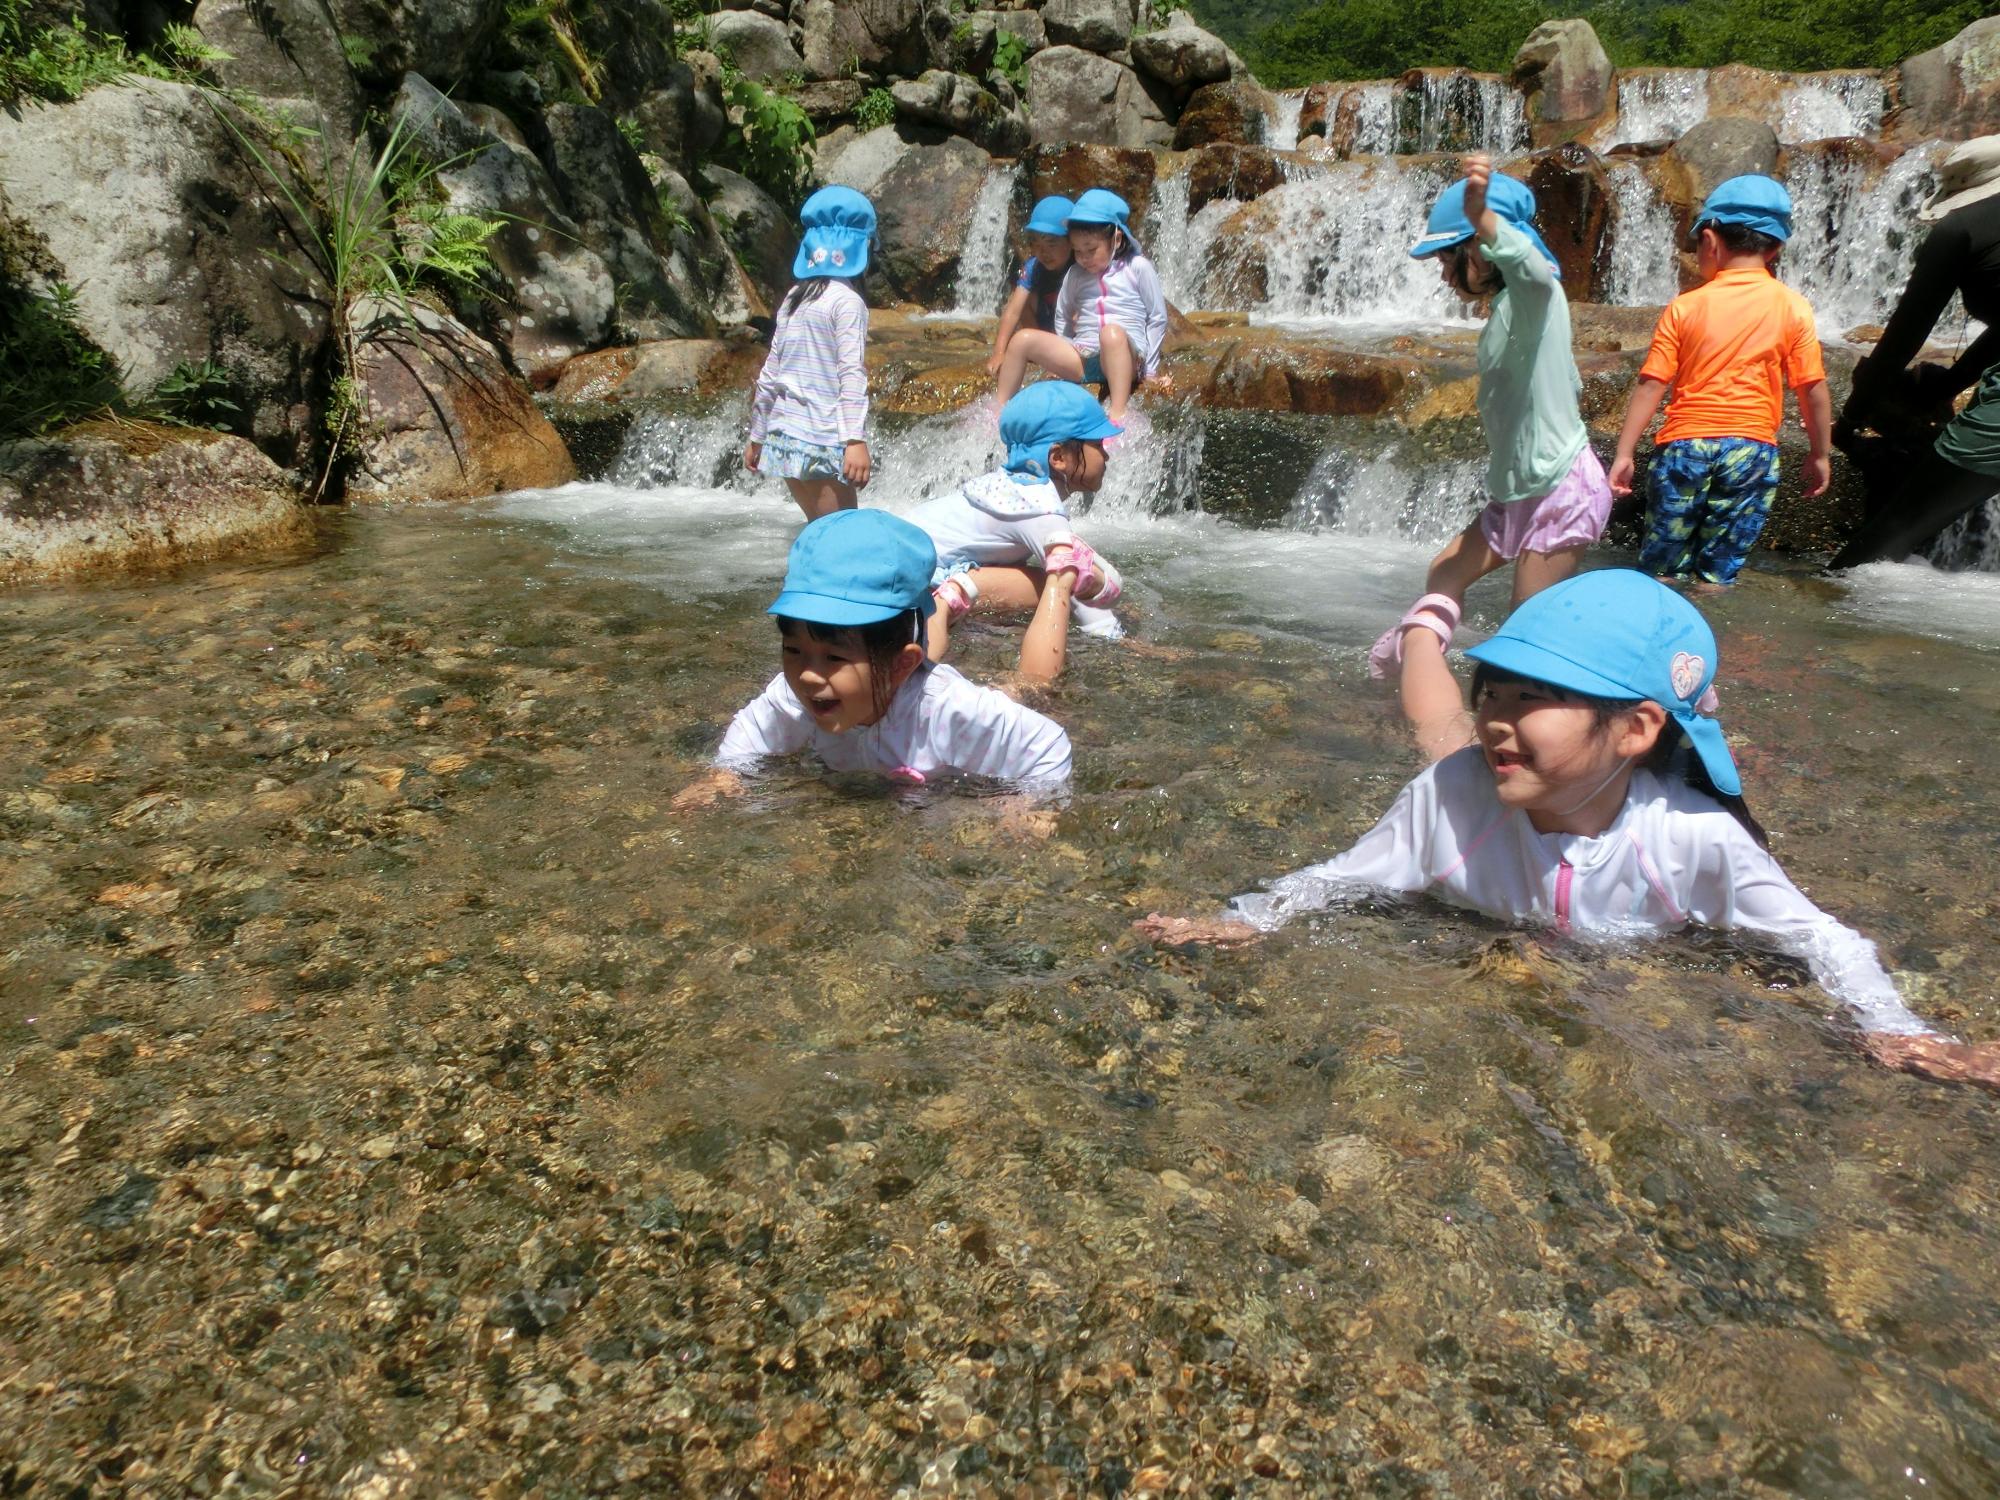 後ろには小さな滝があり、水色の帽子をかぶった園児達が川遊びをしている様子の写真